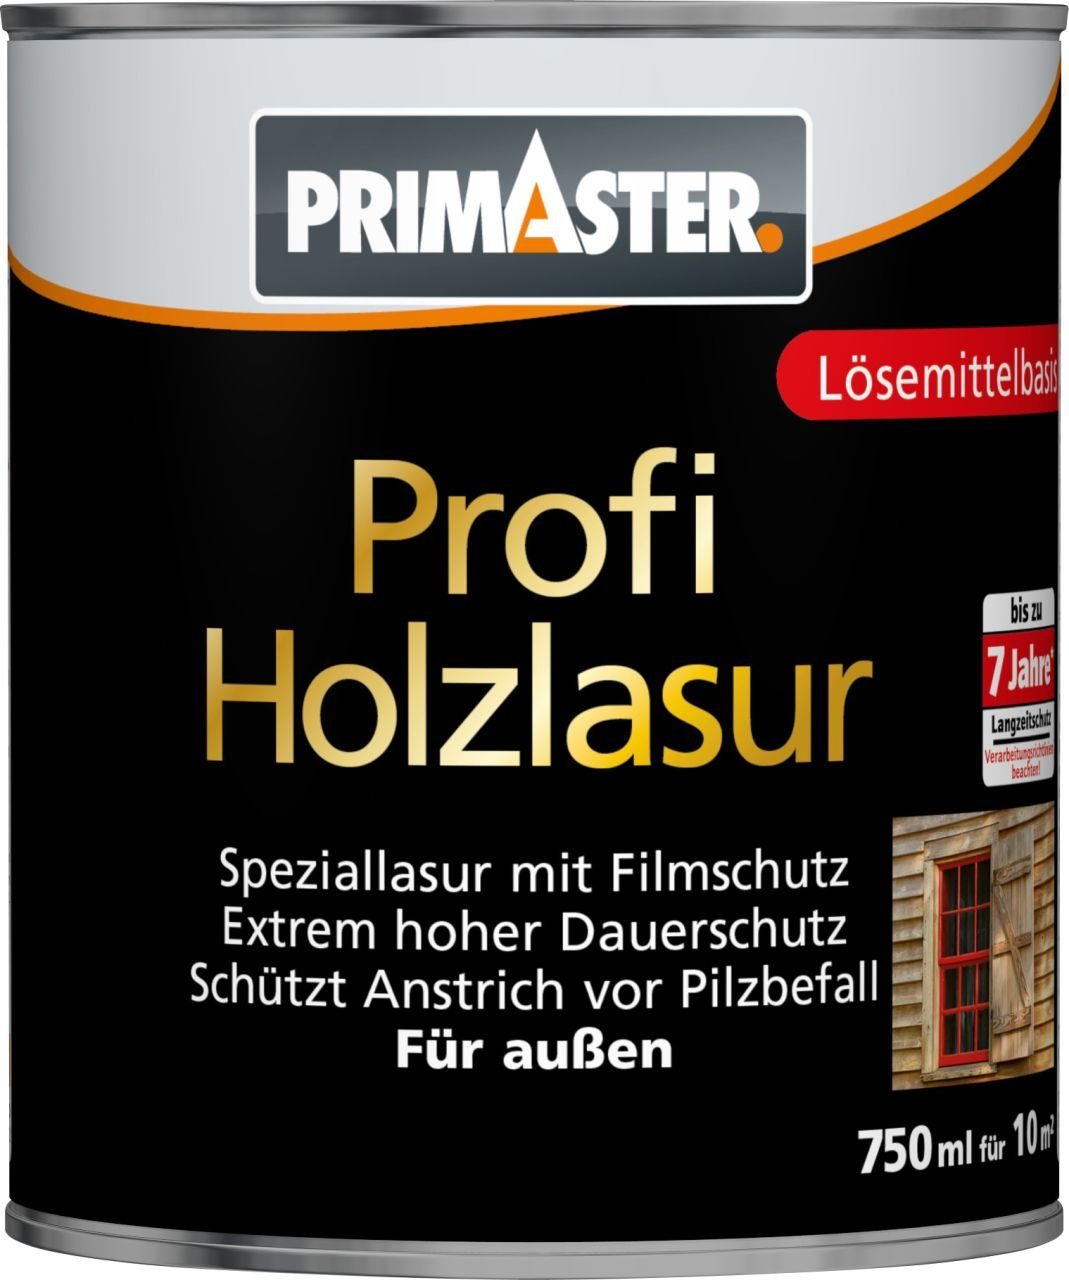 Profi Lasur Holzlasur kiefer ml 750 Primaster Primaster